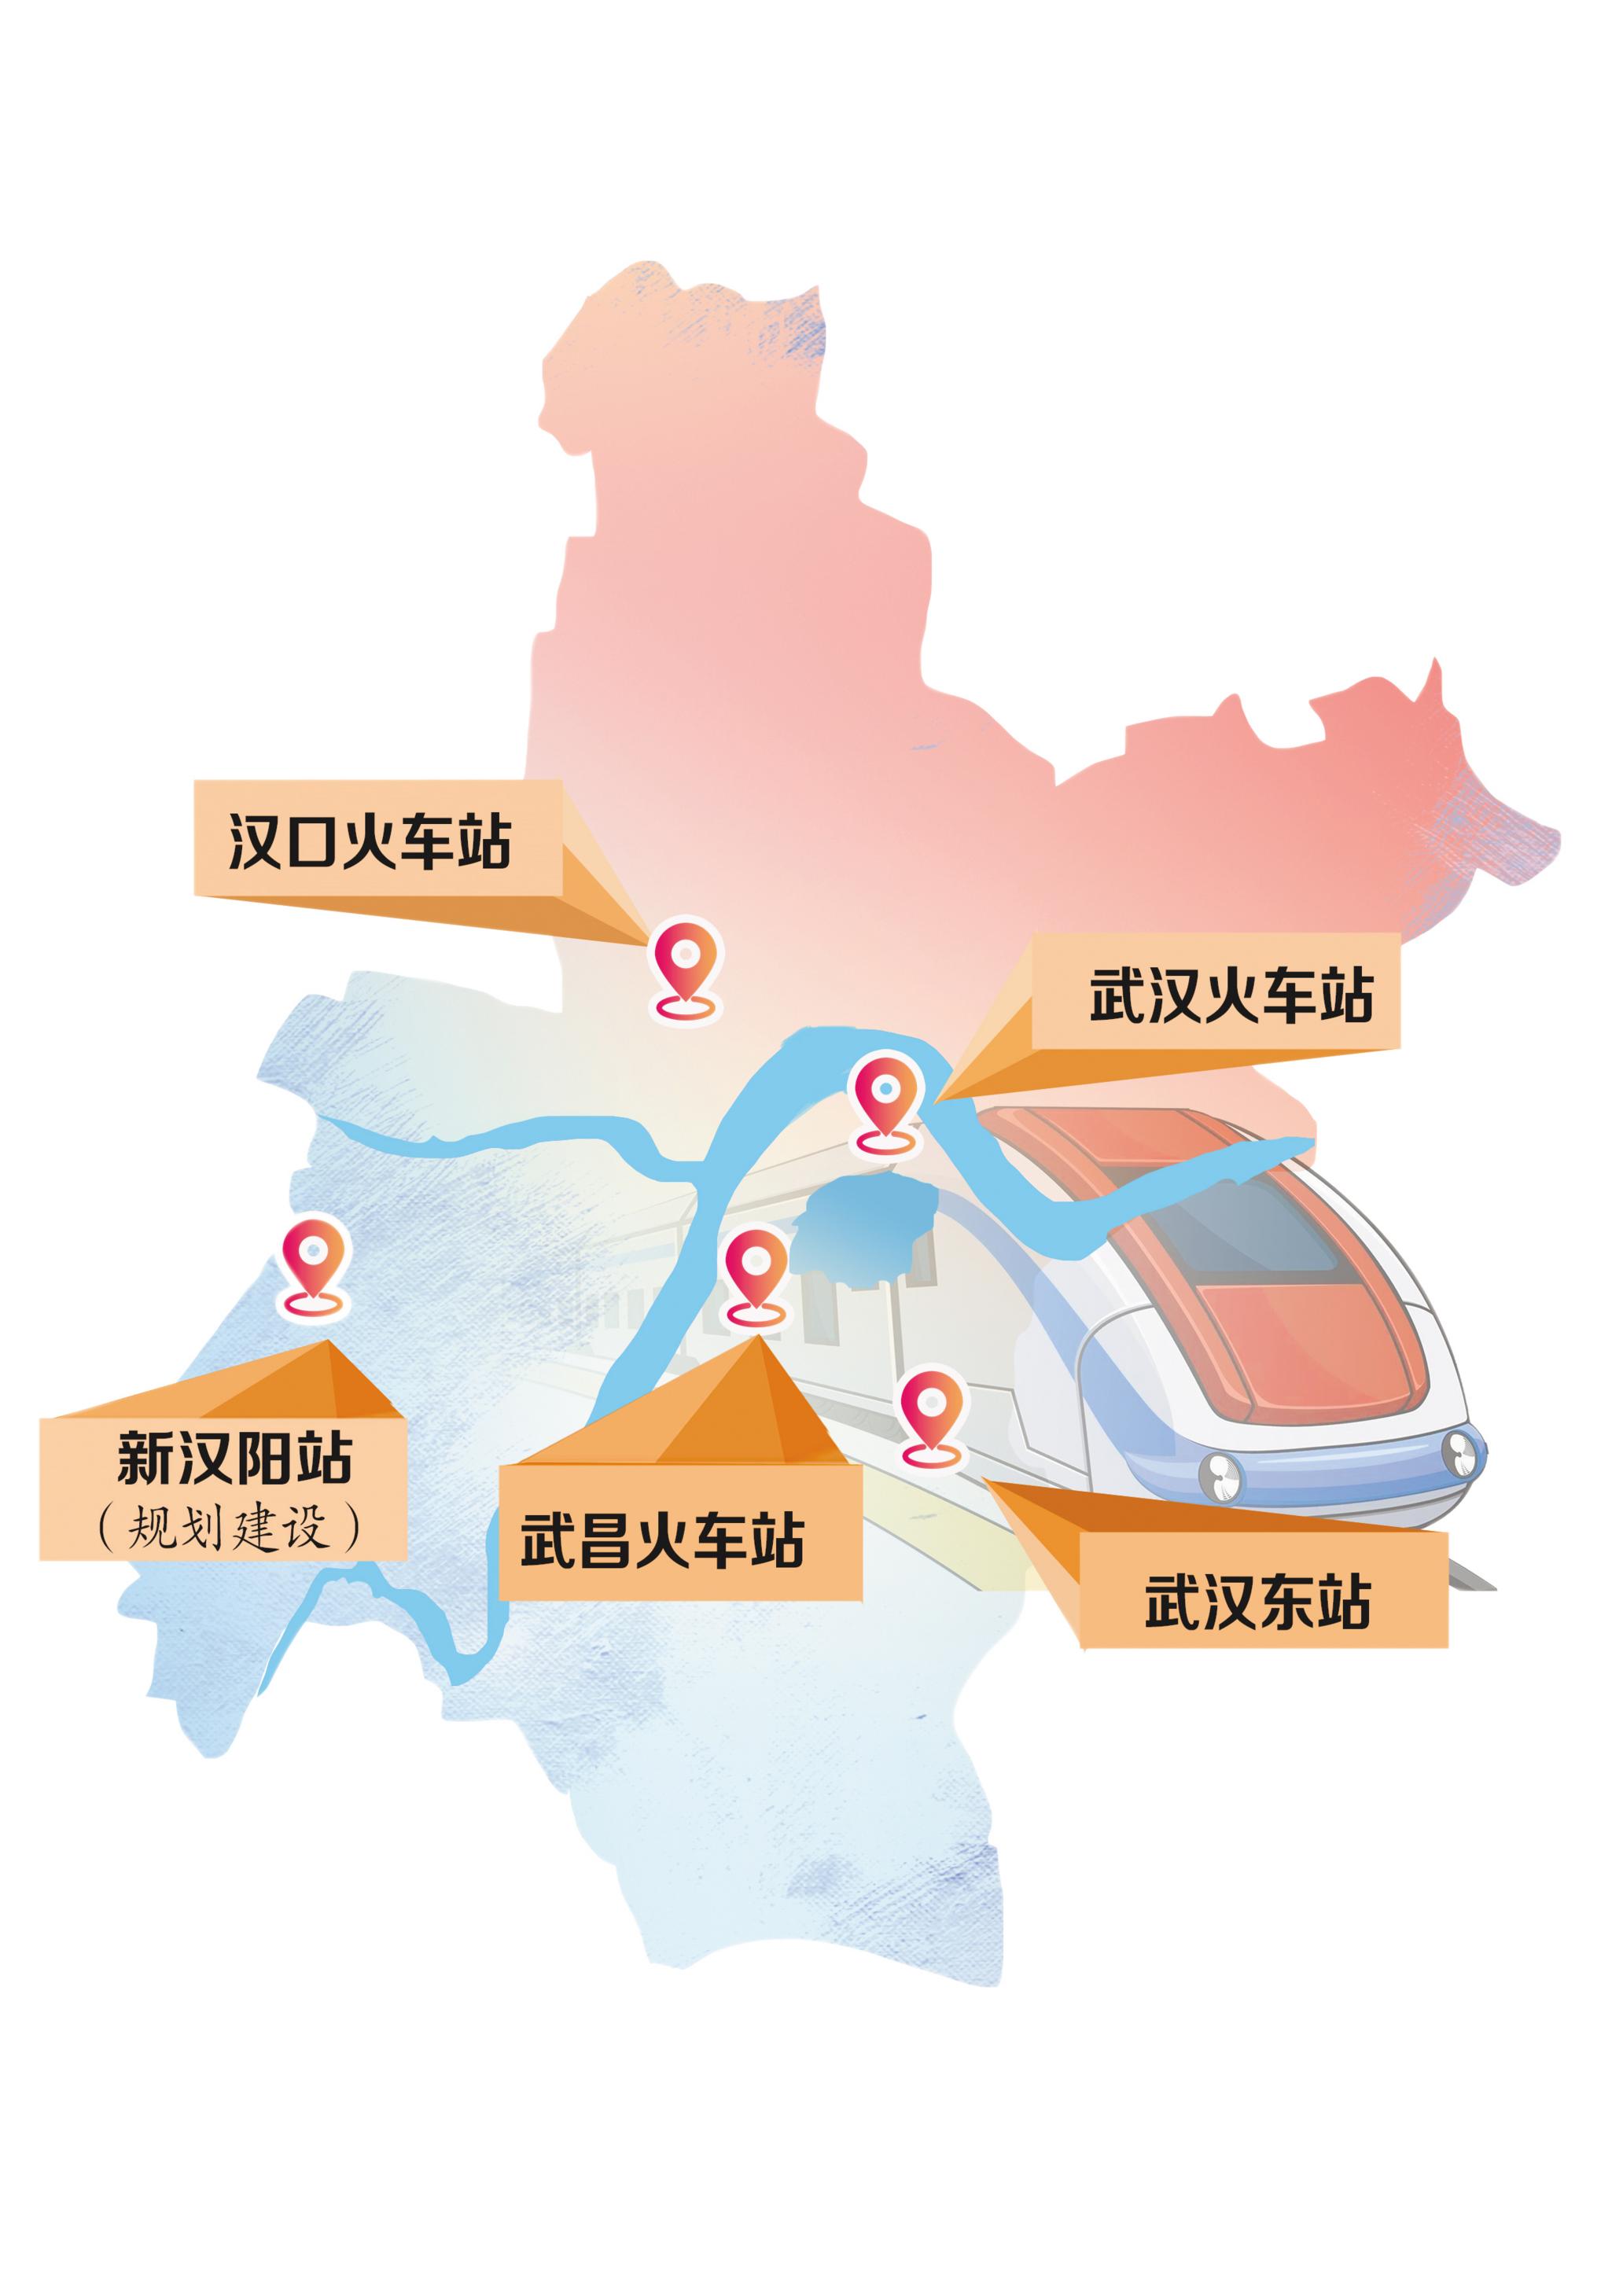 热点关注位于光谷的武汉东站即将开通武汉形成东南西北四站格局